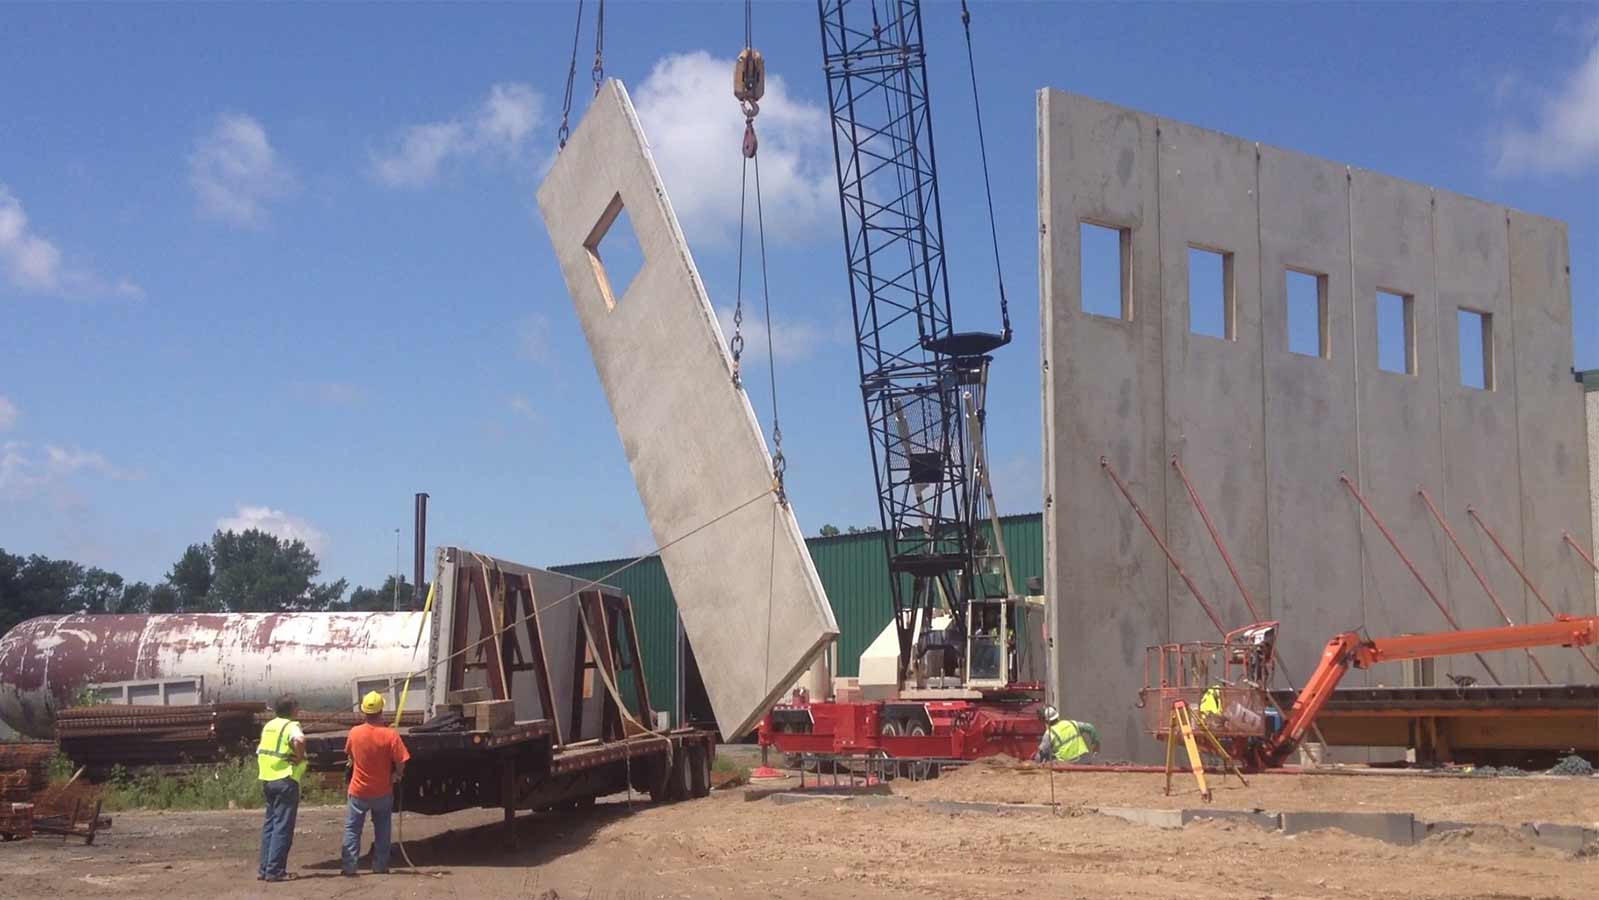 Precast Concrete Wall Panels Hanson Silo Company